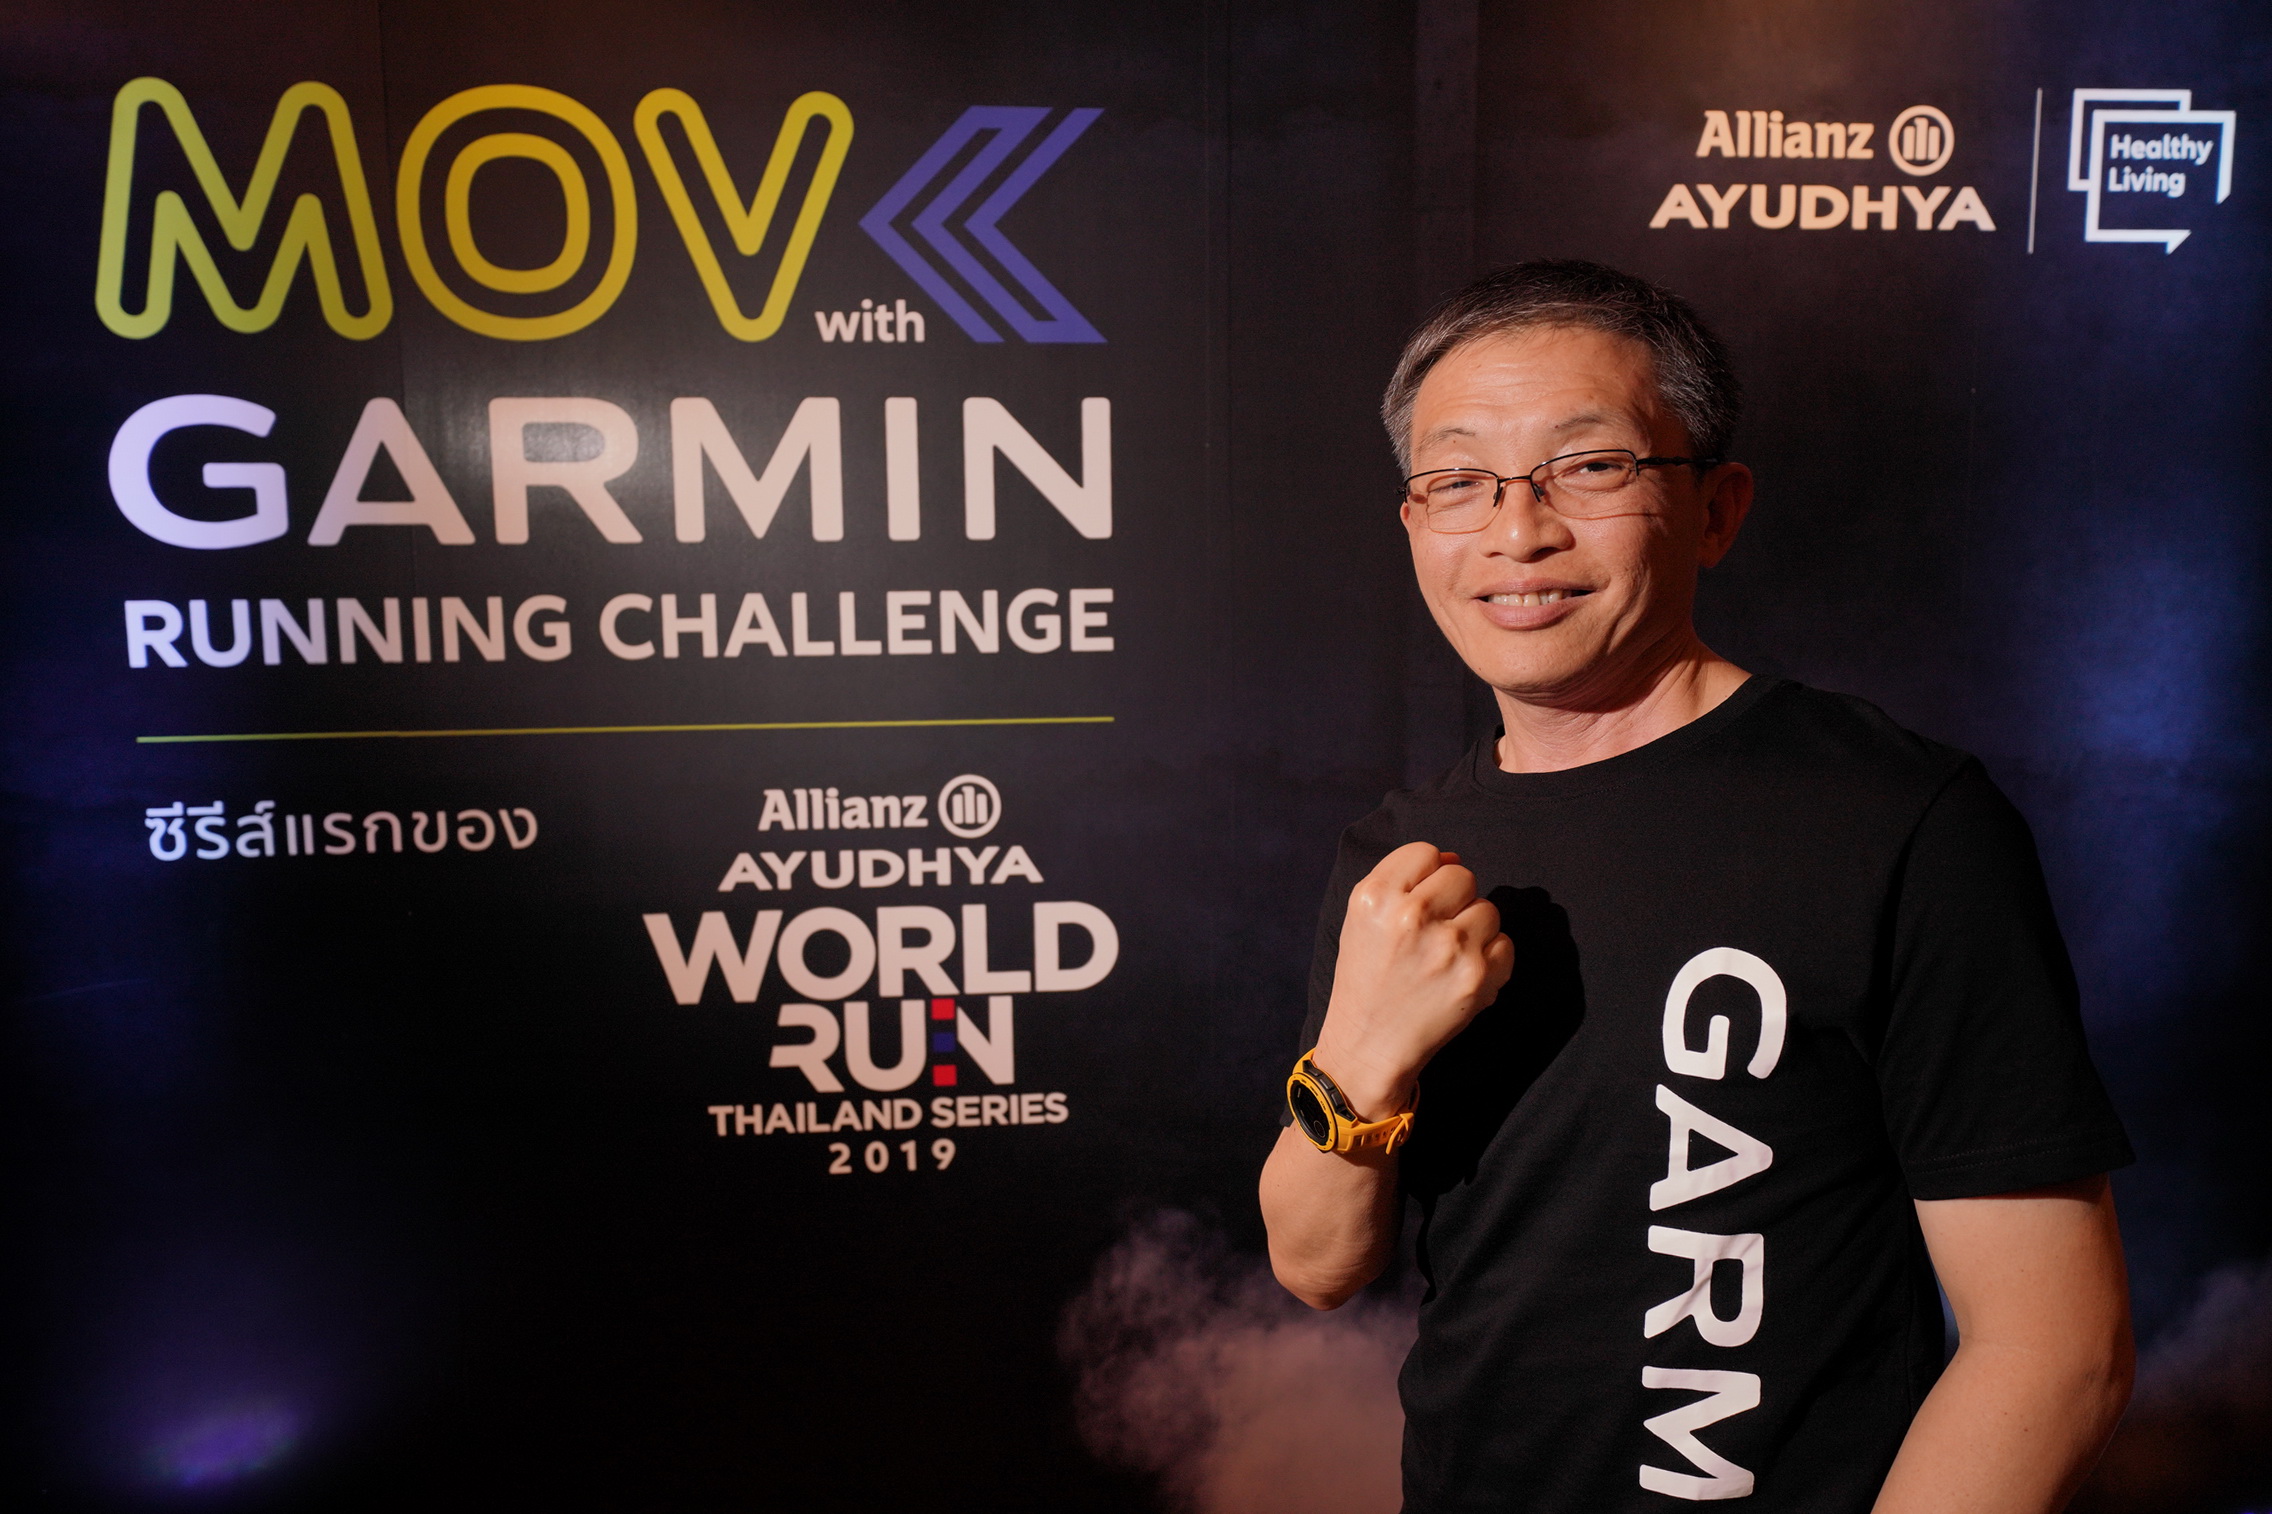 การ์มินเปิดโครงการ Allianz Ayudhya World Run Thailand Series 2019